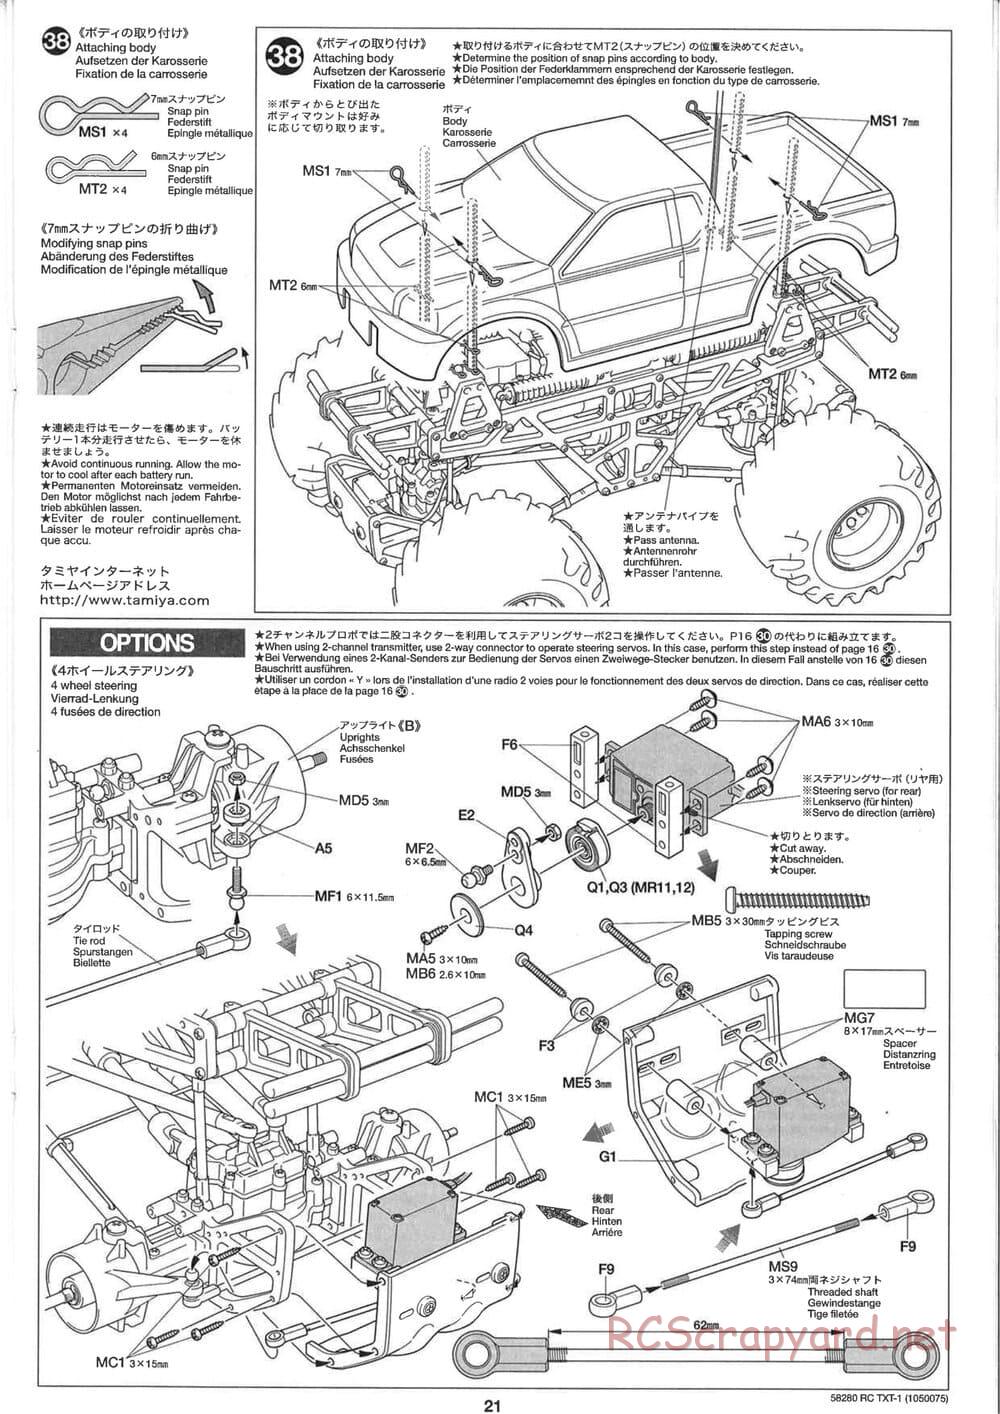 Tamiya - TXT-1 (Tamiya Xtreme Truck) Chassis - Manual - Page 21